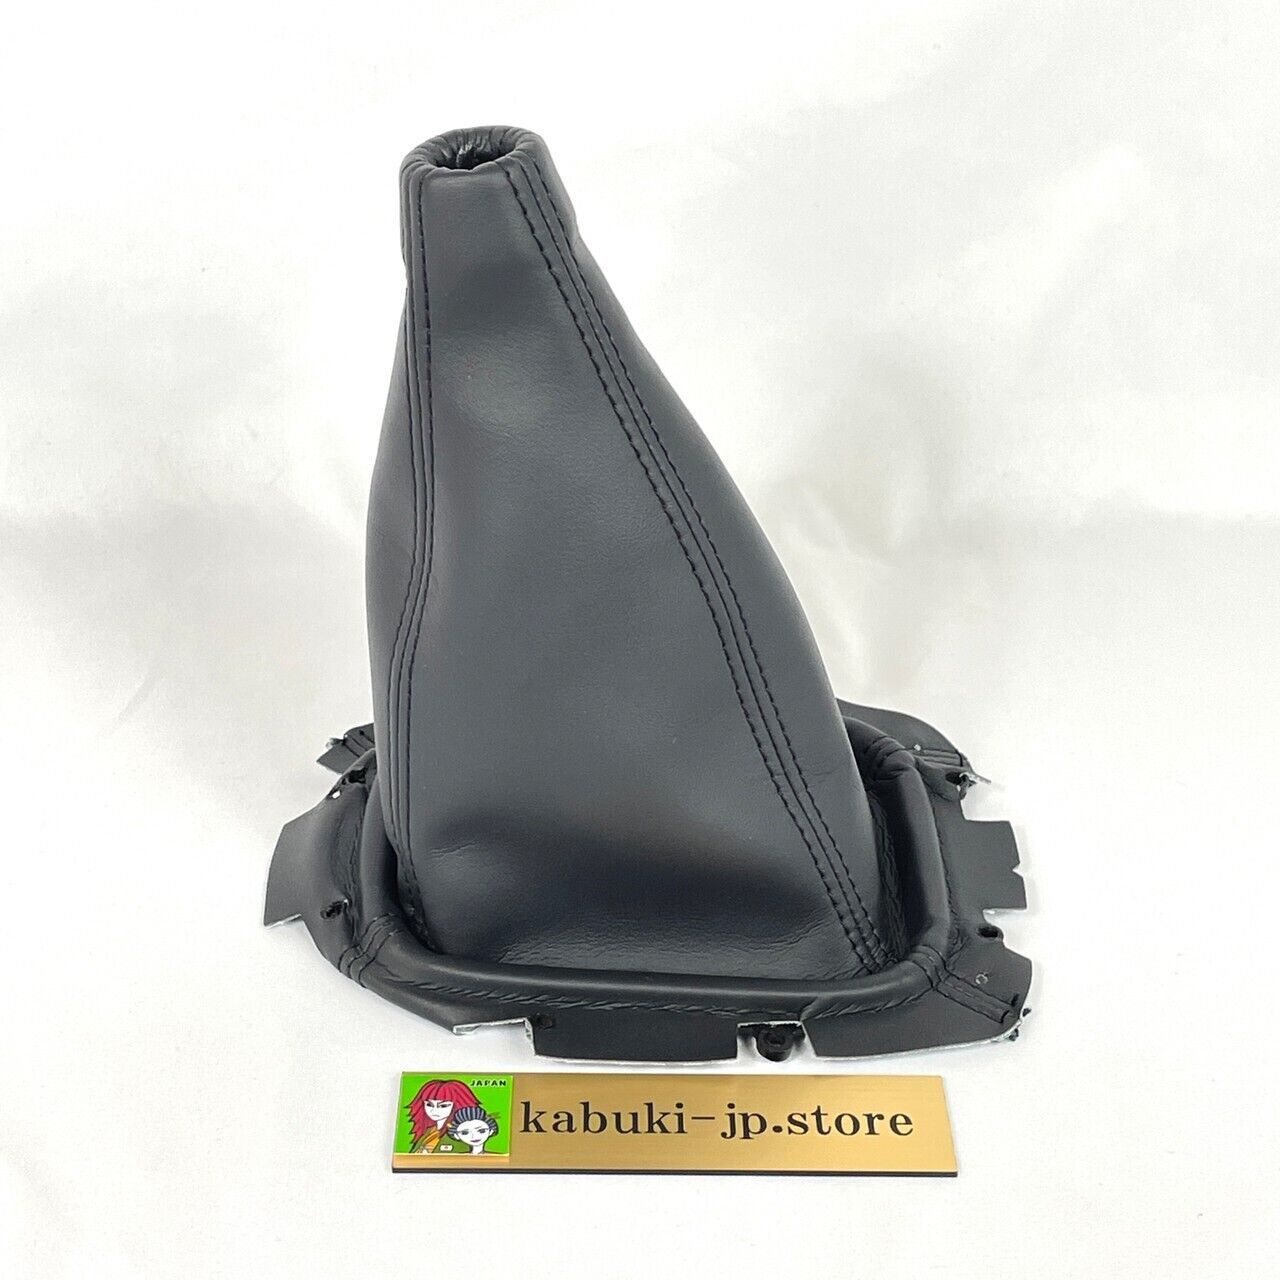 Subaru Genuine 92072FC000 Impreza WRX GC8 Forester Black Leather Shift Boot